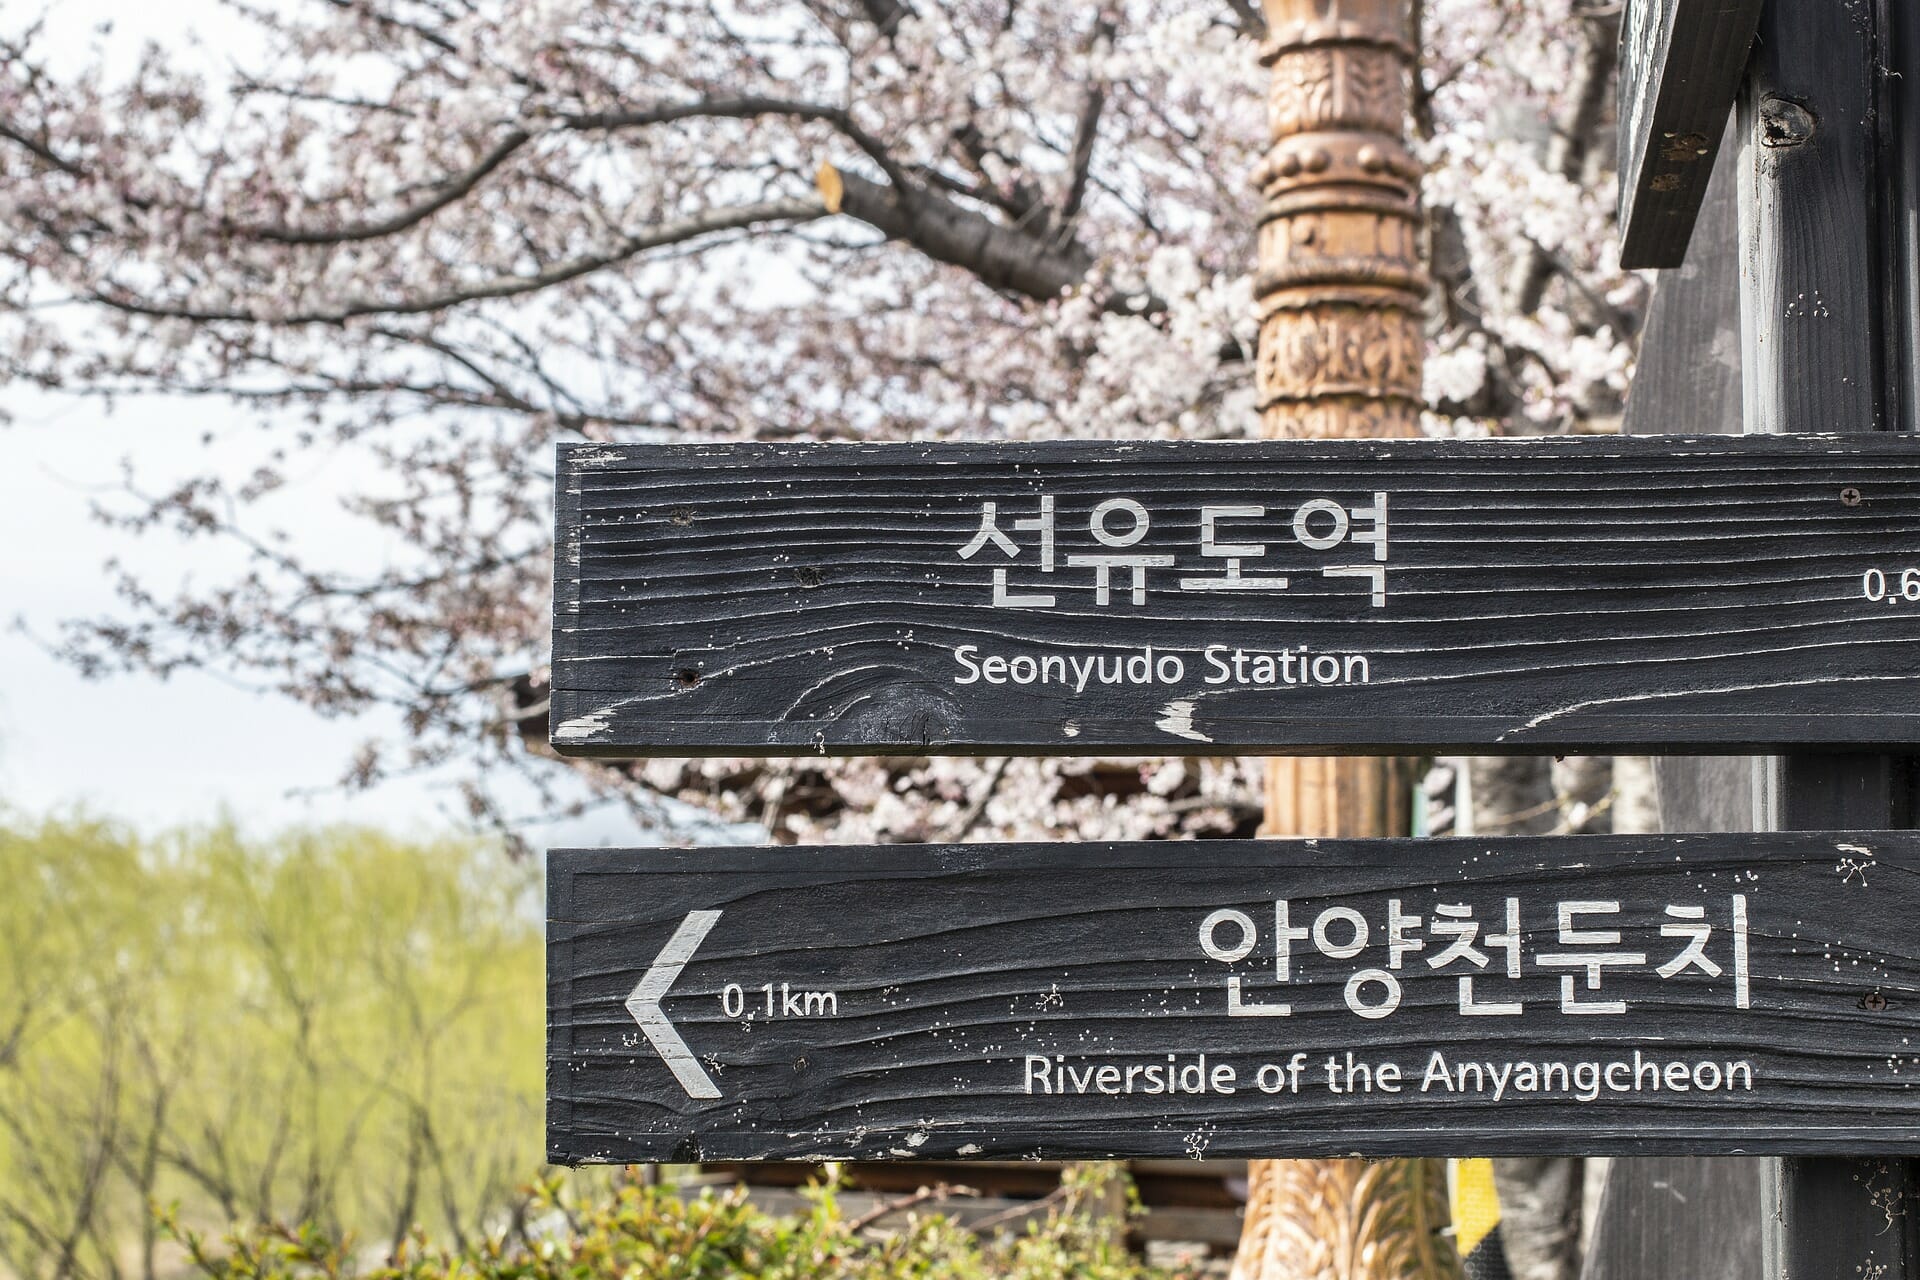 80+ Basic Korean Travel Phrases - Phrases to Learn Before Visiting Korea 7